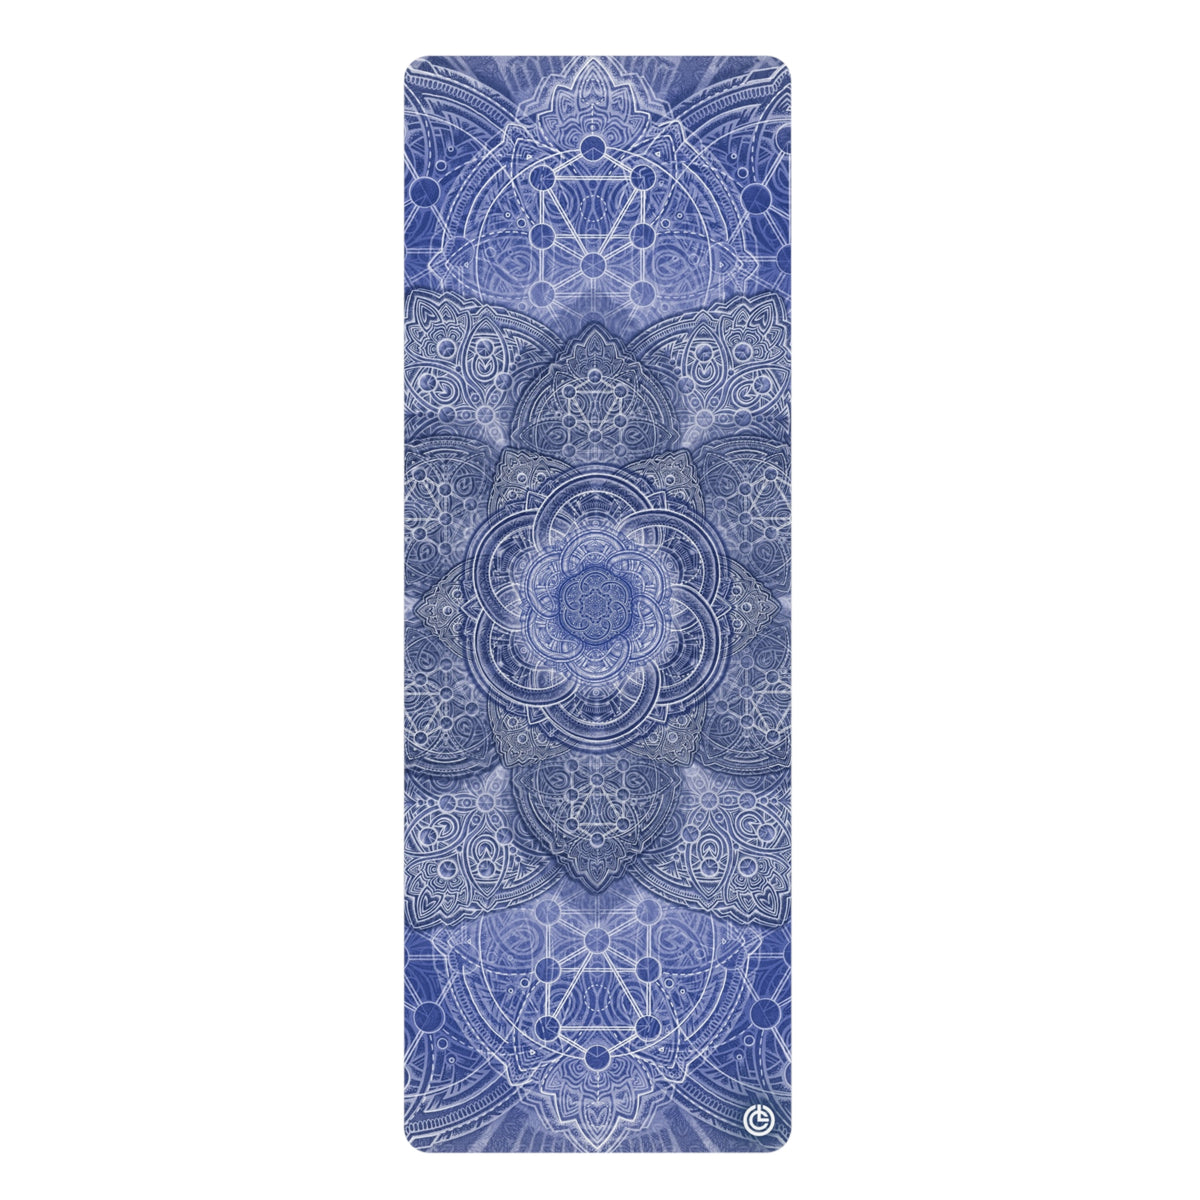 Blue Flower of Life - Yoga Mat